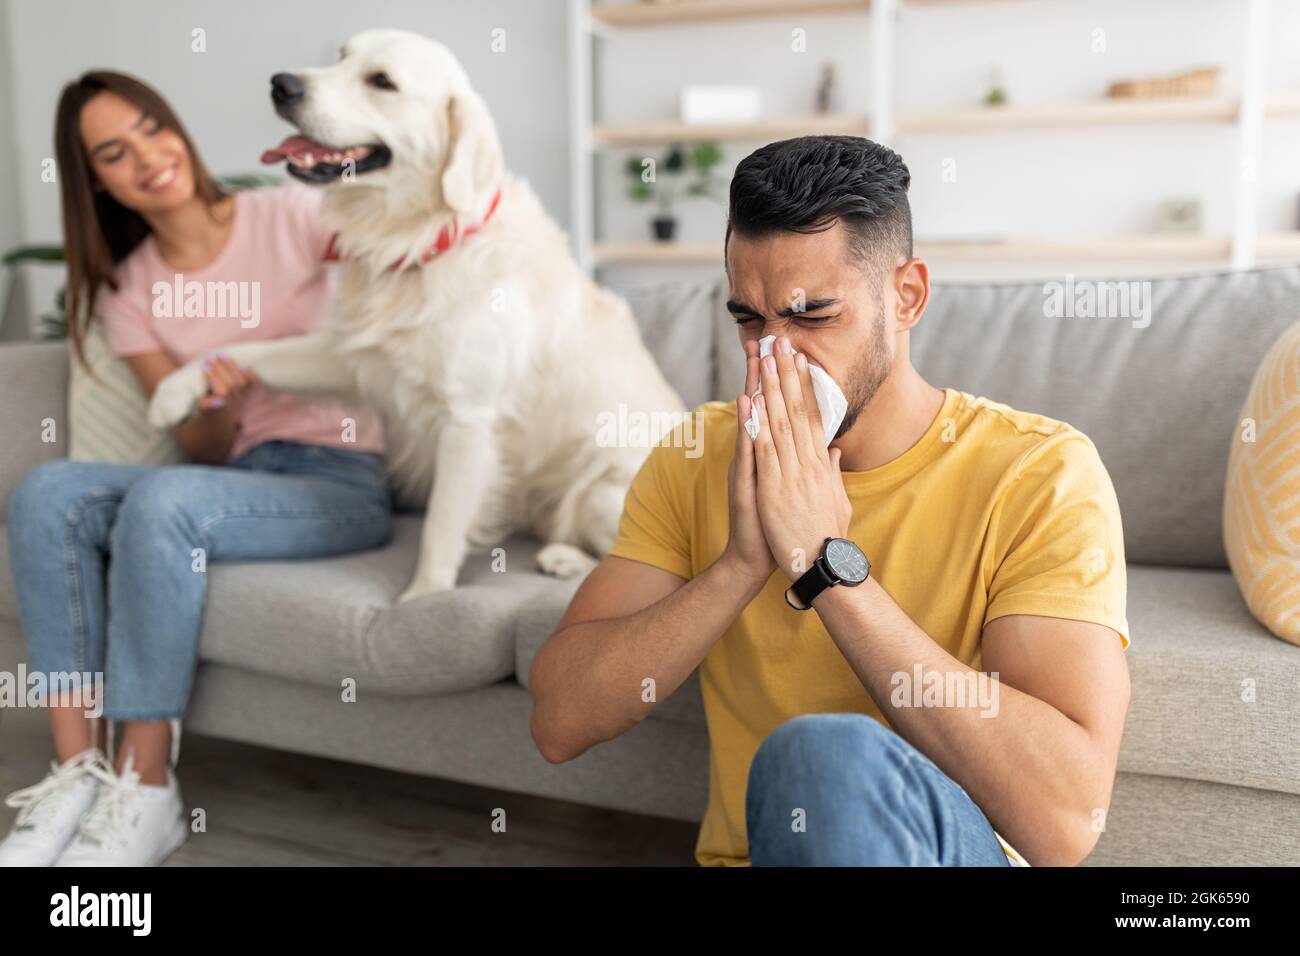 Malato arabo ragazzo che ha freddo, soffia naso, starnuti in carta tissue, la sua ragazza con cane da compagnia su sfondo, copia spazio Foto Stock